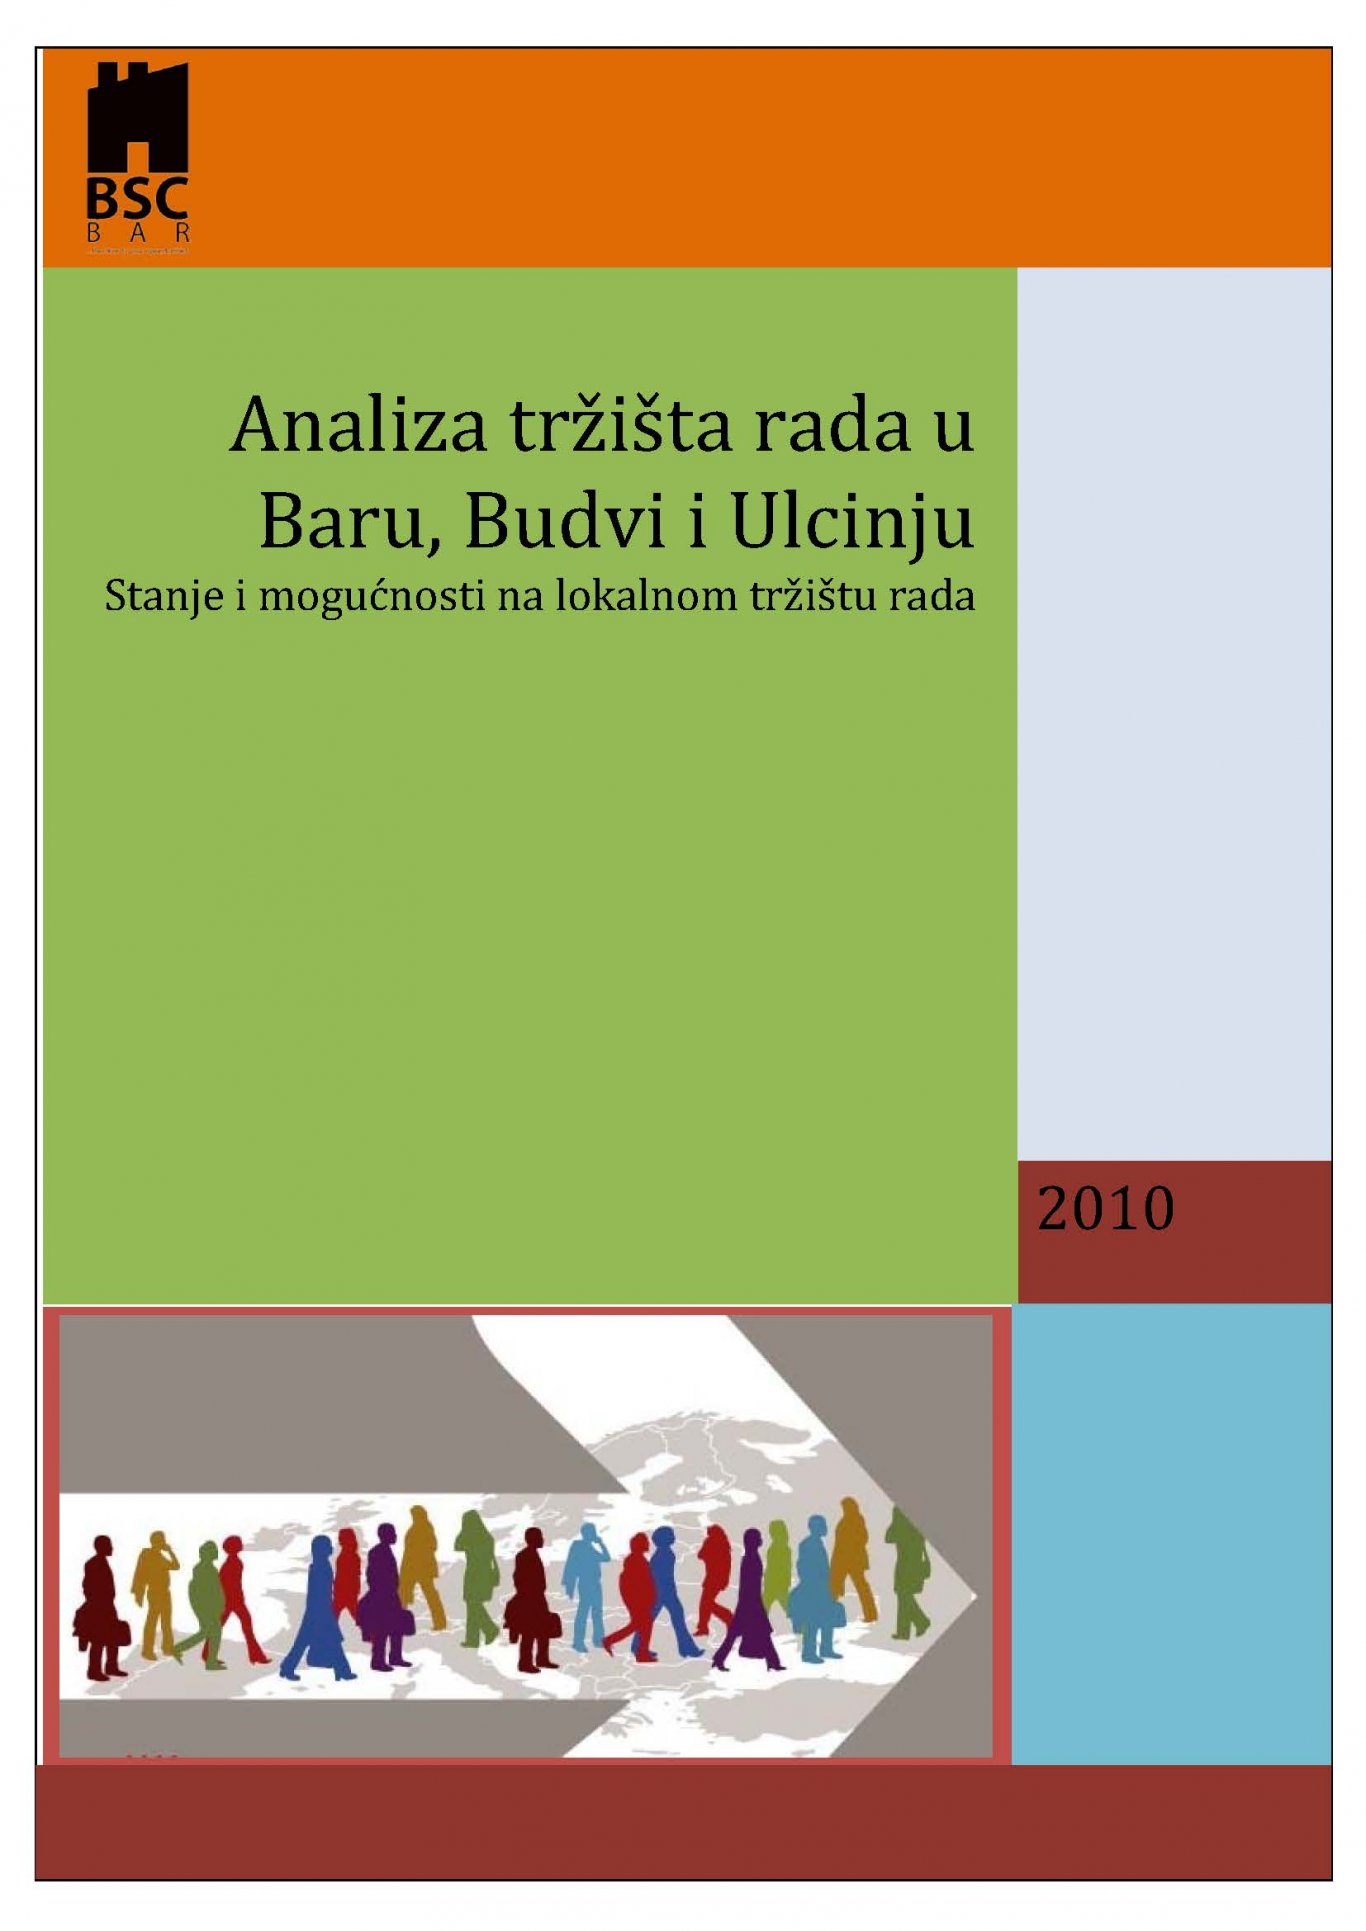 Labor market analysis in Bar, Budva and Ulcinj 2010